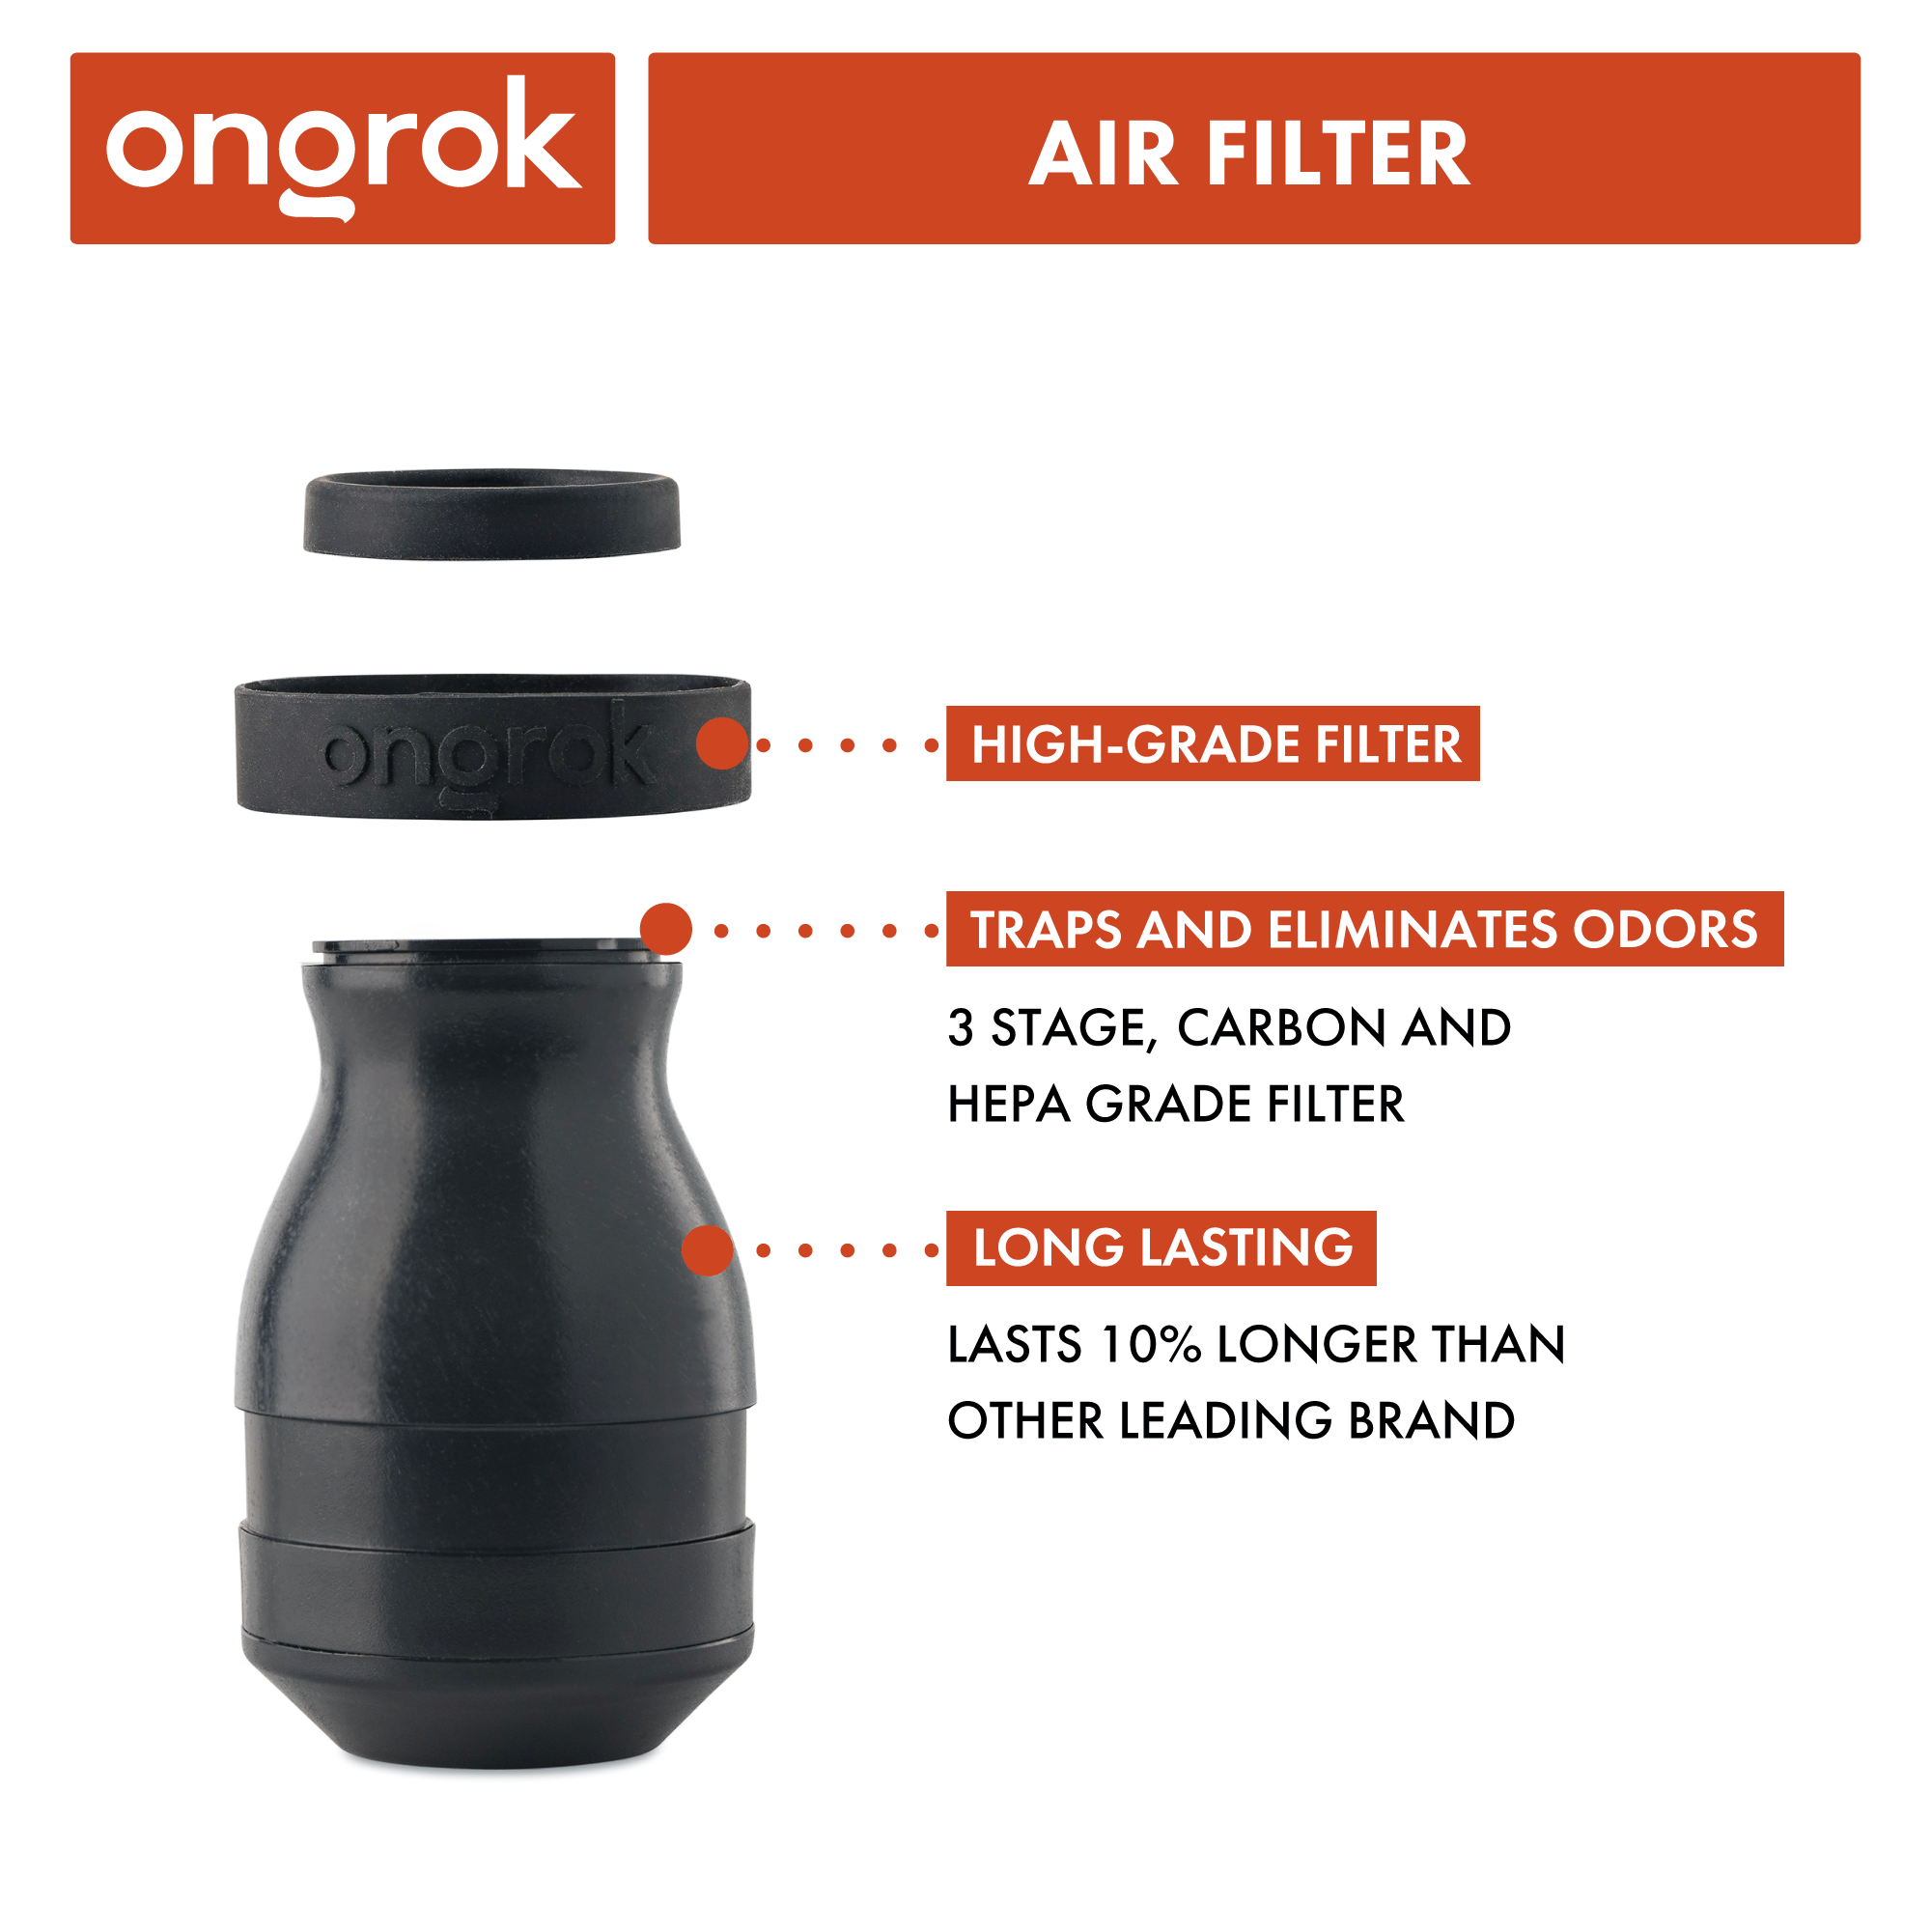 Ongrok Plant-Based Filter